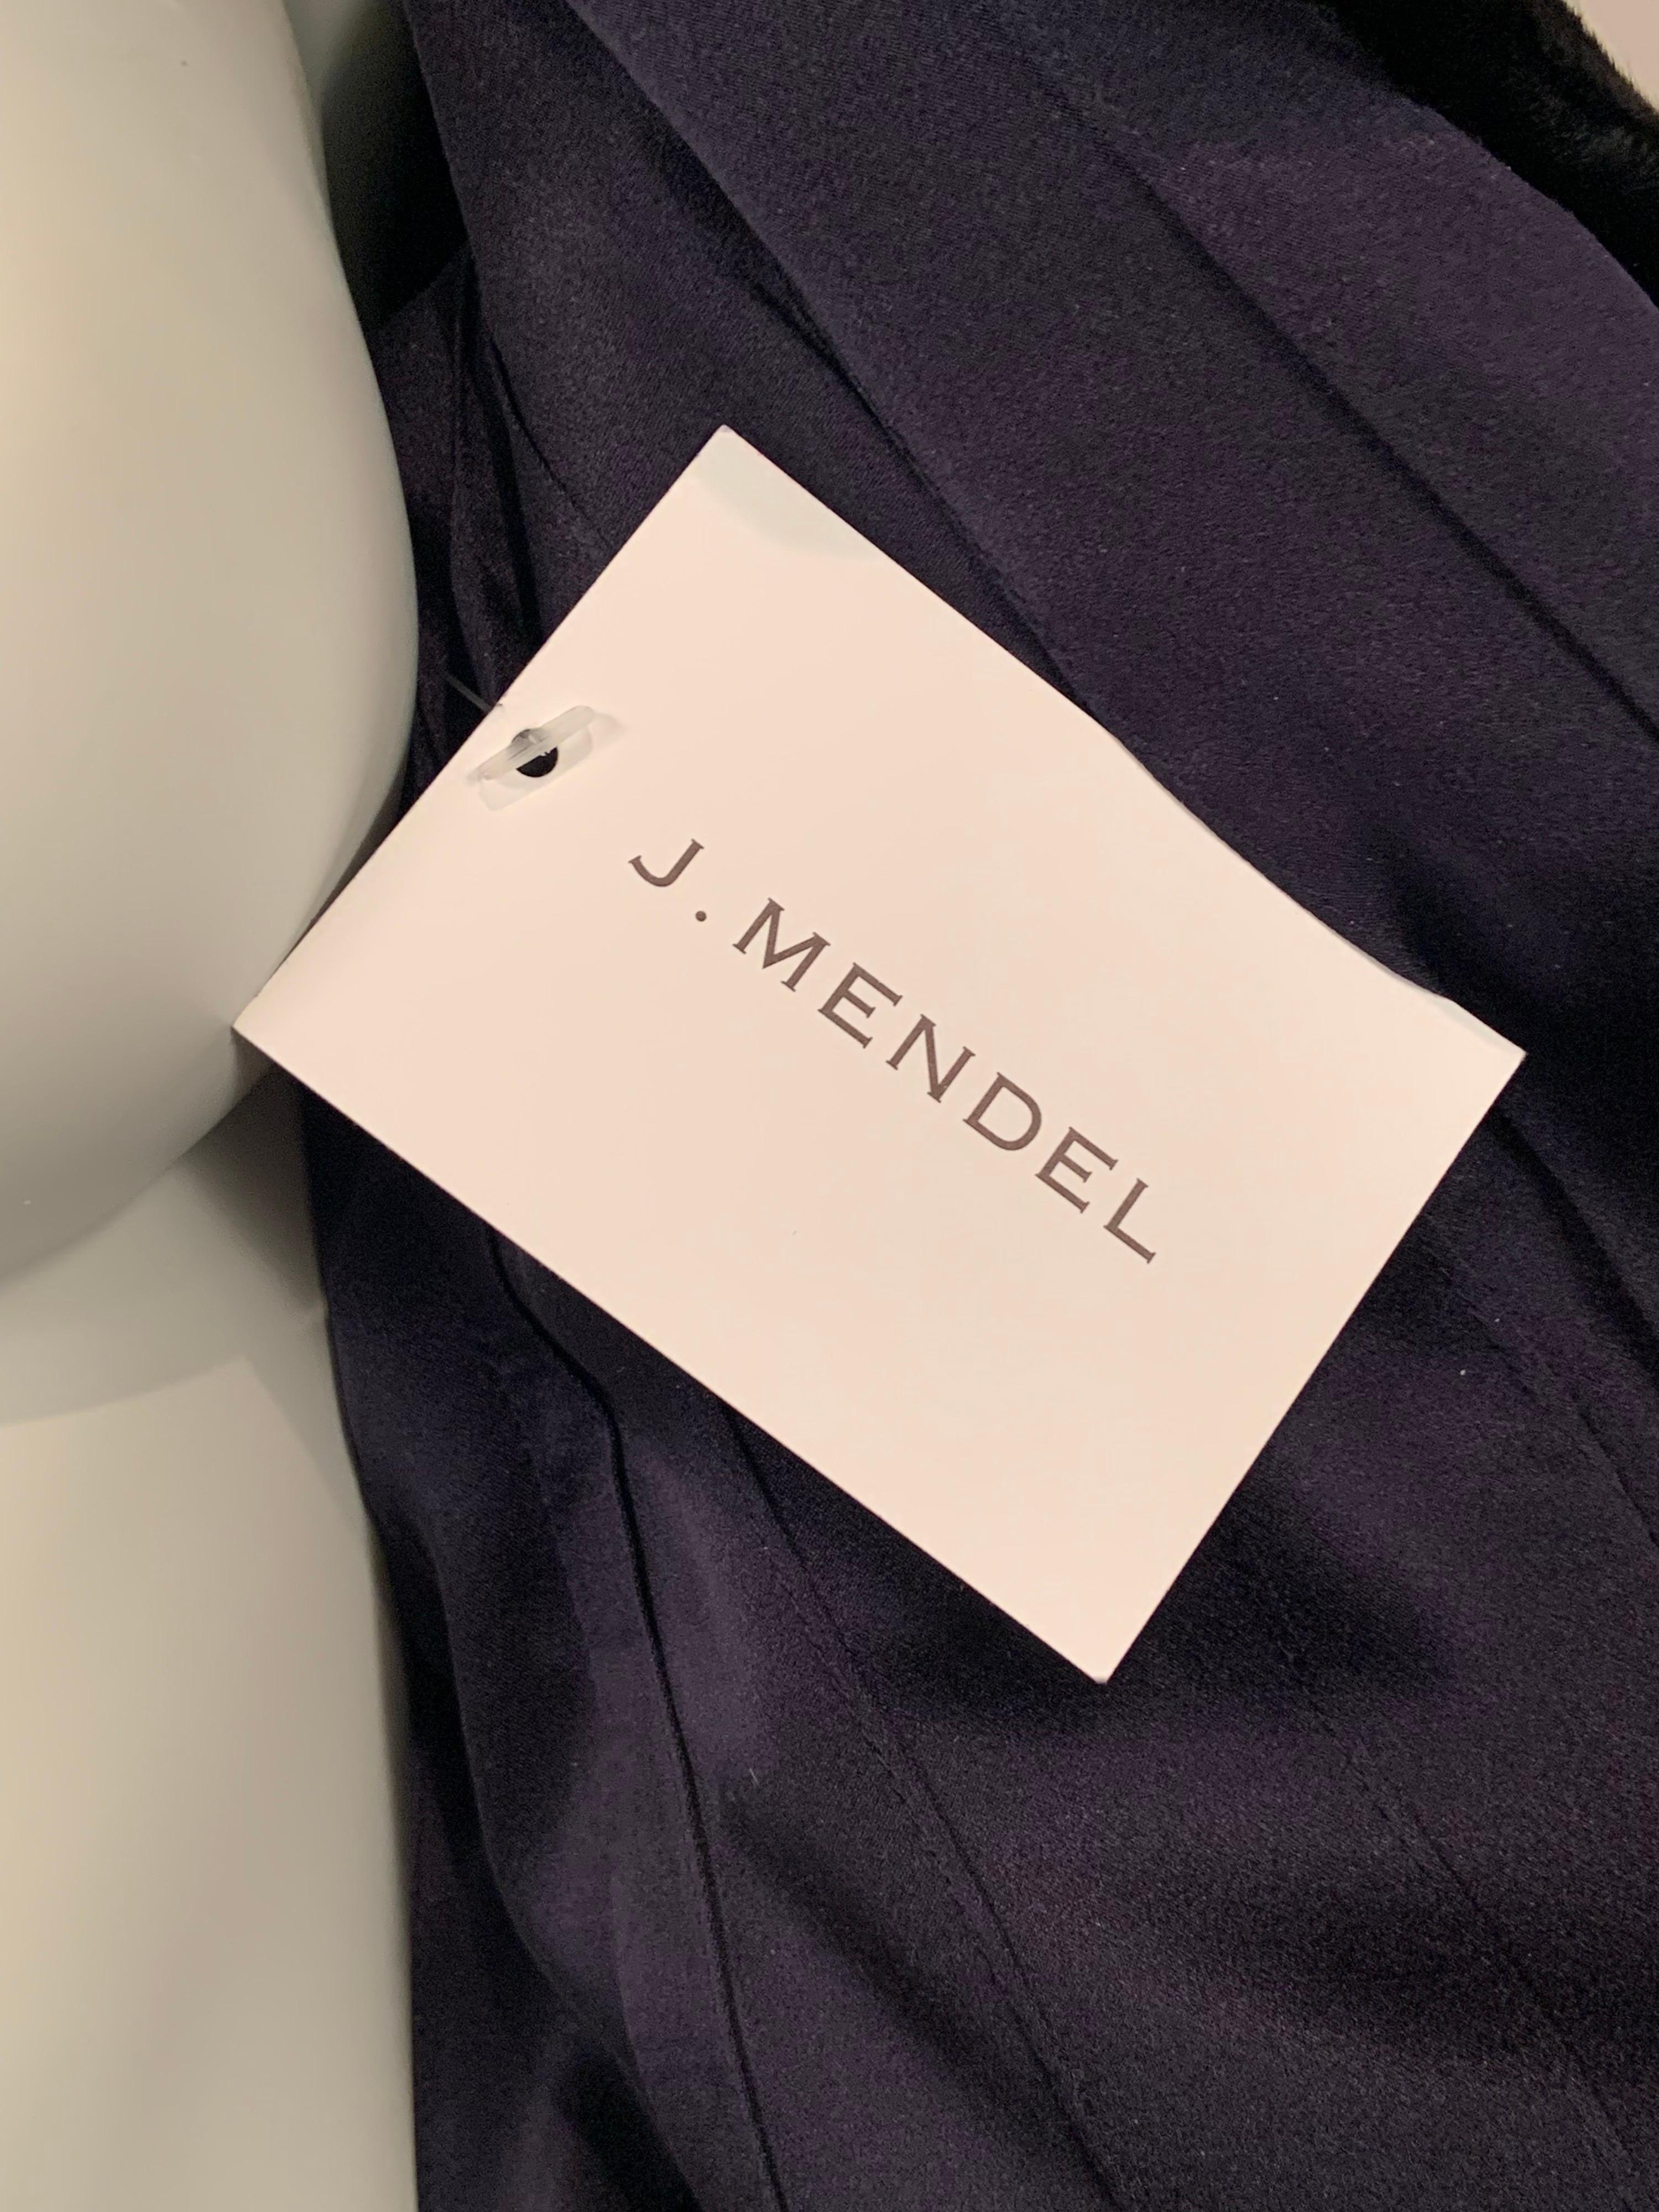 J. Mendel Black Swakara Coat Jagged Edge Hemline New Original Price Tag $23, 500 4